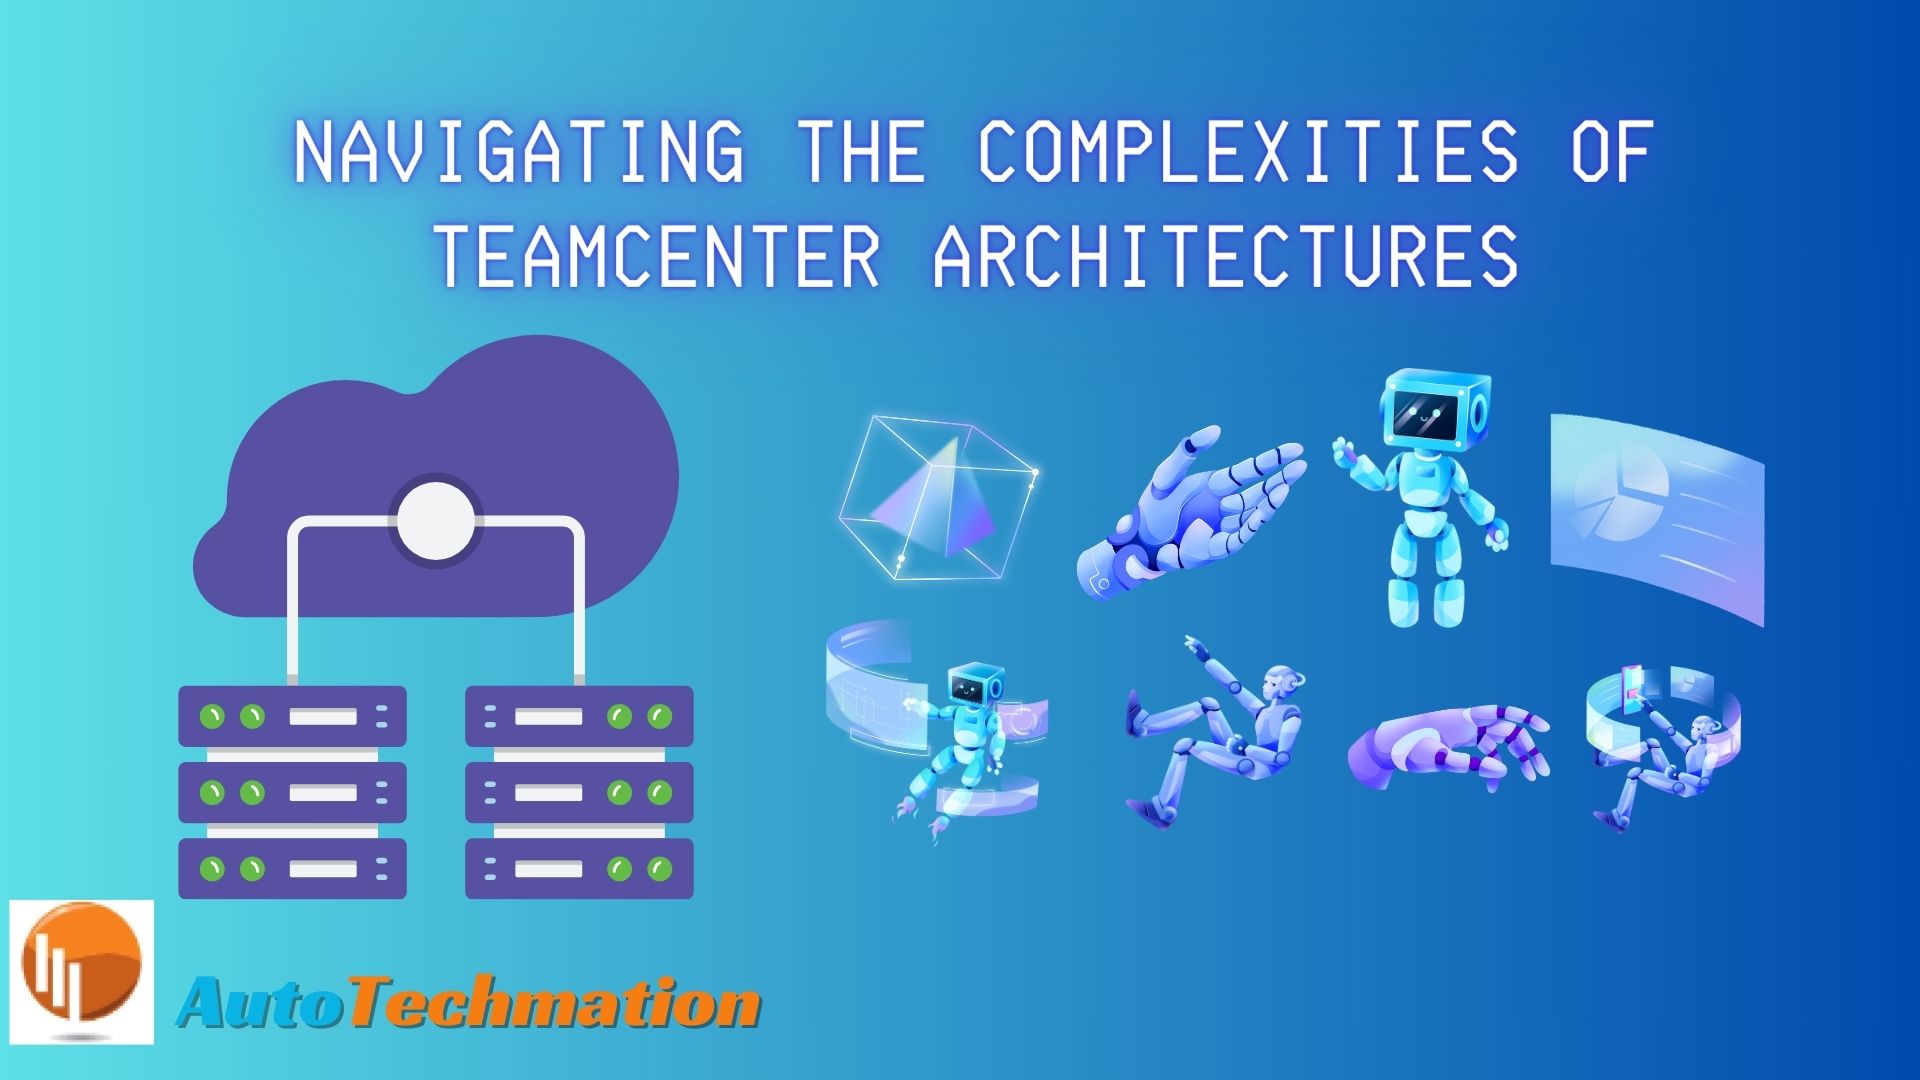 Teamcenter Architecture